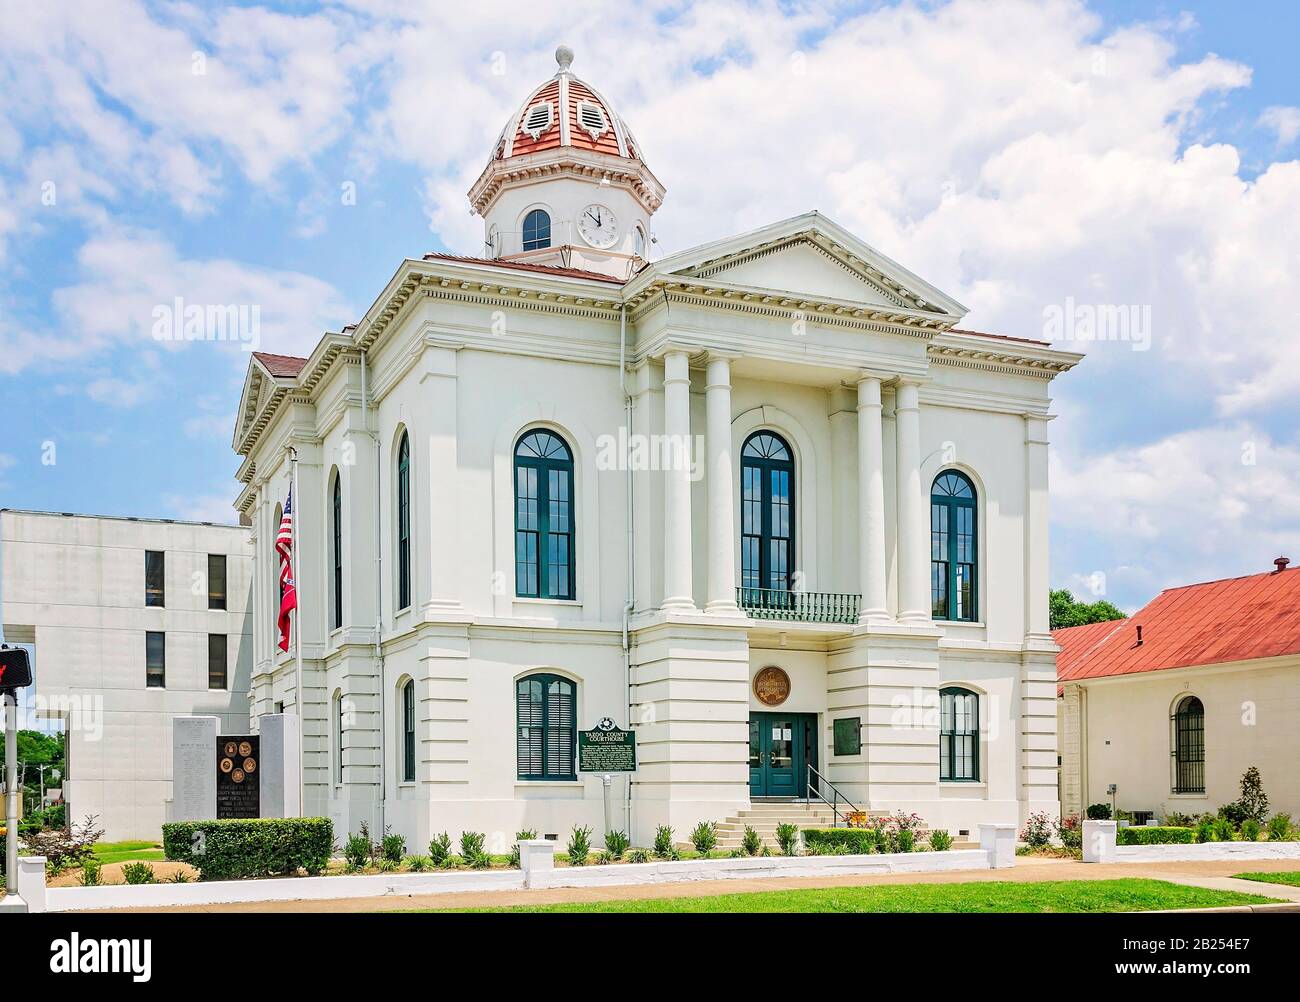 Il tribunale della contea di Yazoo è raffigurato nella città di Yazoo, Mississippi. Il tribunale della contea di Yazoo, costruito nel 1872, è un mattone stuccato in stile italiano. Foto Stock